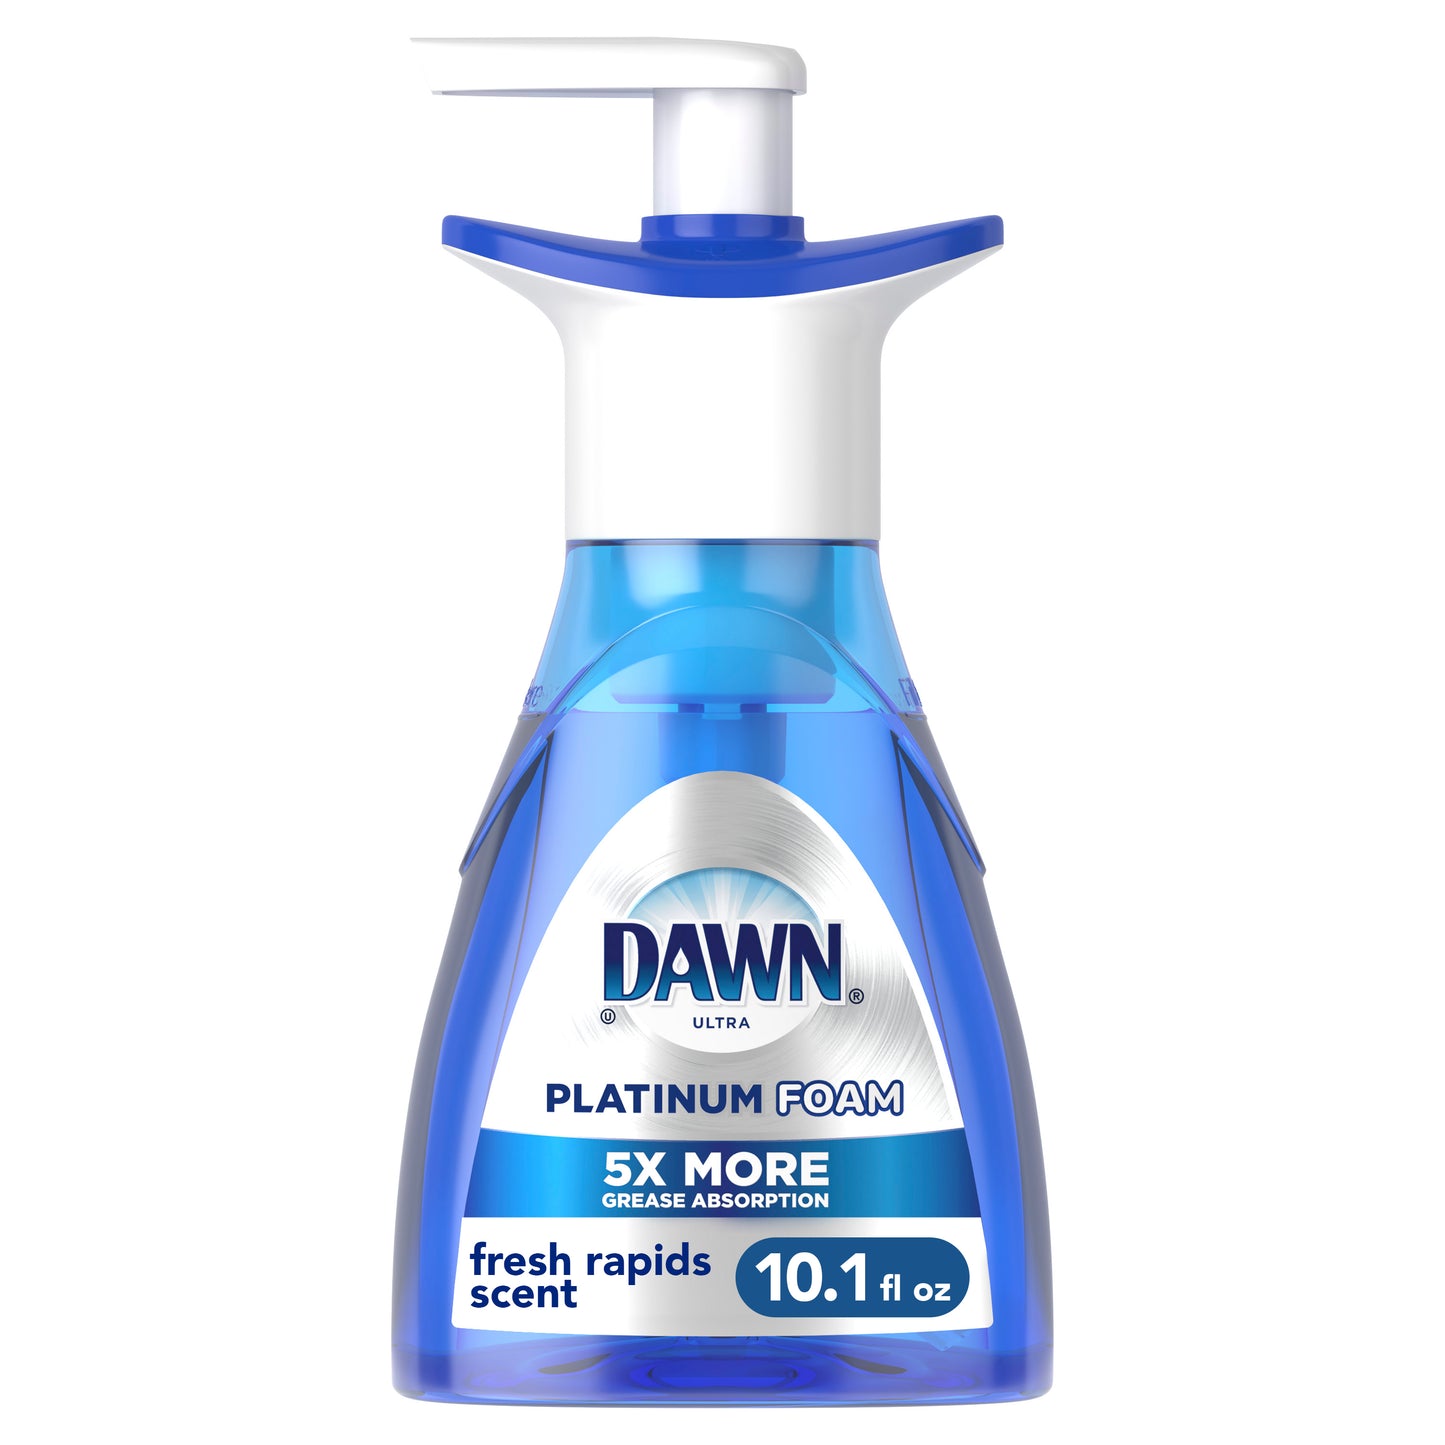 Dawn Ultra Platinum Foam Dish Soap, Fresh Rapids Scent, 10.1 fl oz (Pack of 2)